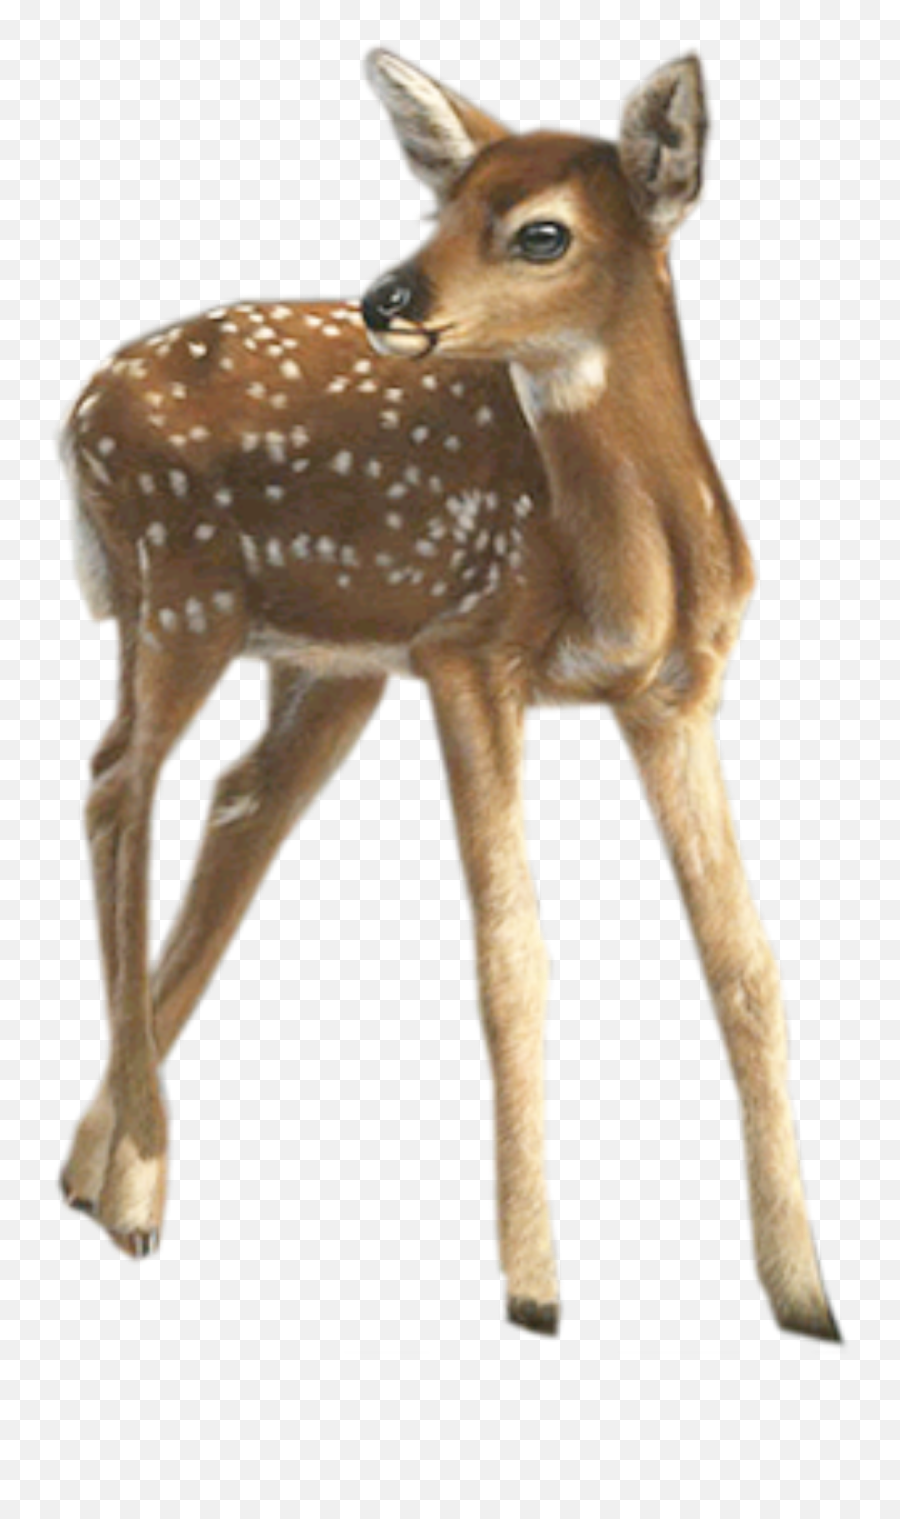 Deer Fawn Baby Sticker By Chris - Realistic Clipart Deer Emoji,Whitetail Deer Emoji